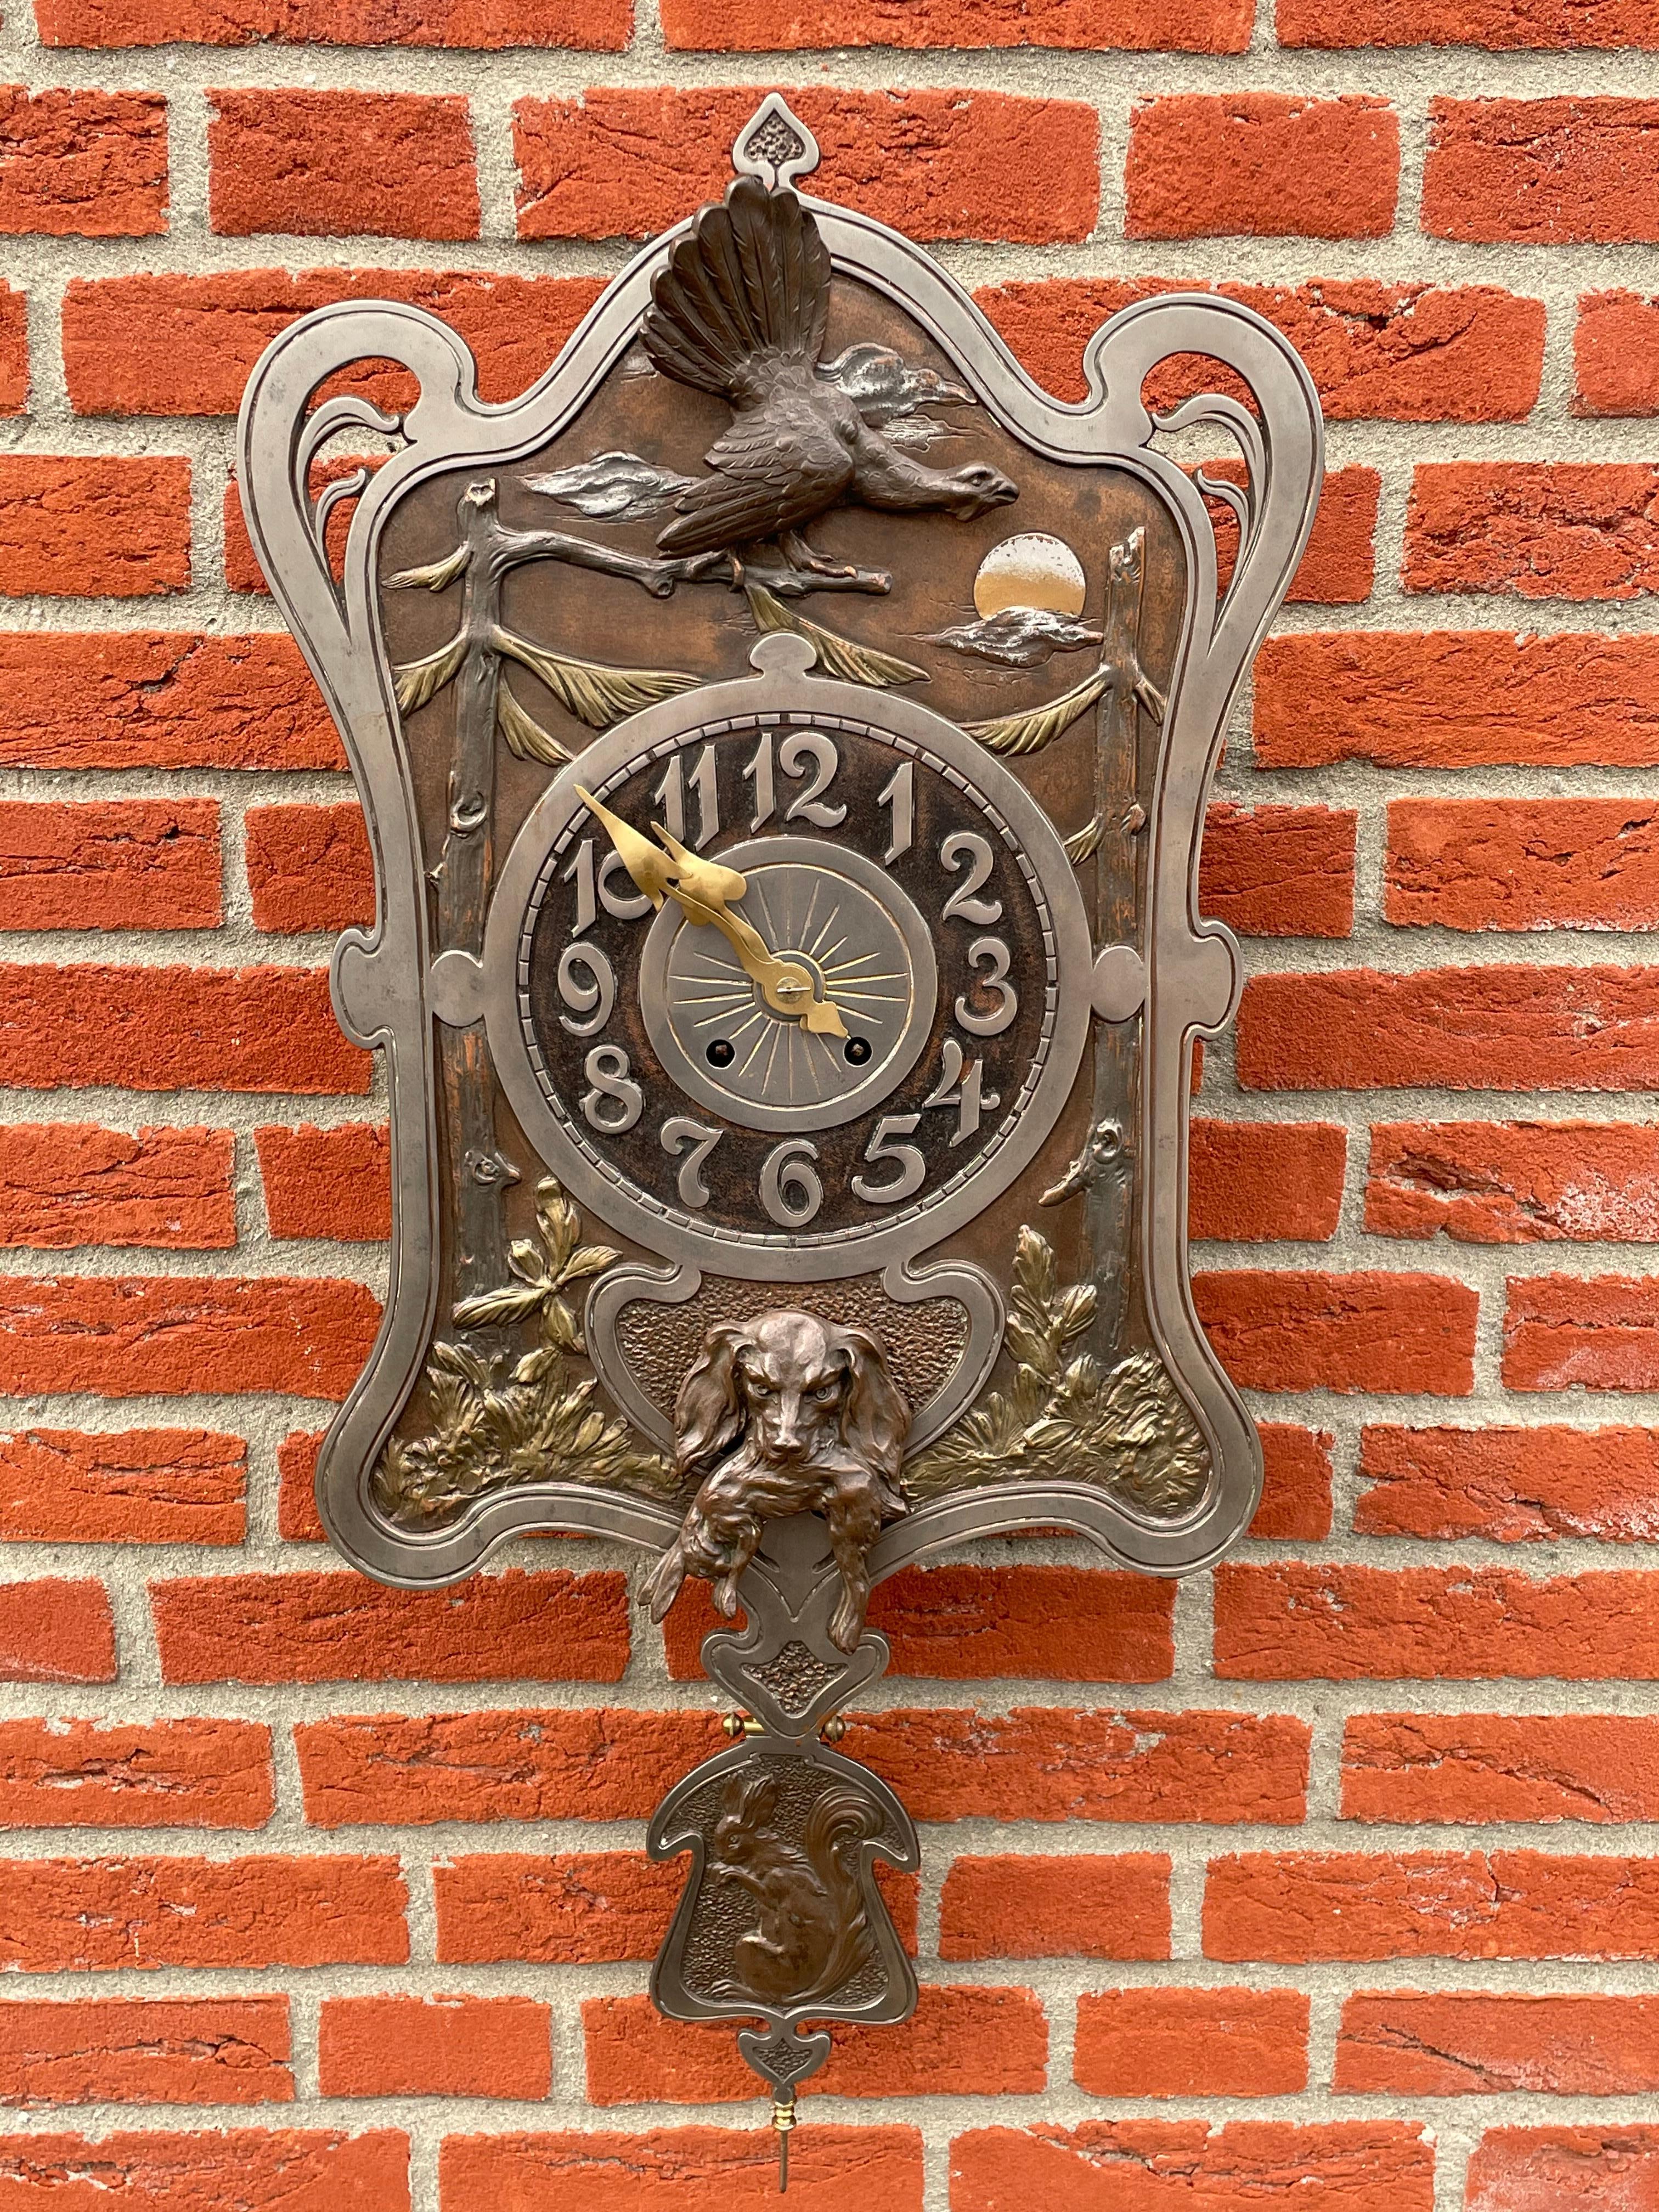 Grande et étonnante, horloge murale ancienne fabriquée à la main de haute qualité.

Cette horloge de chasse unique en son genre révèle la qualité (tant dans la conception que dans les détails) pour laquelle le style Arts and Crafts est connu et